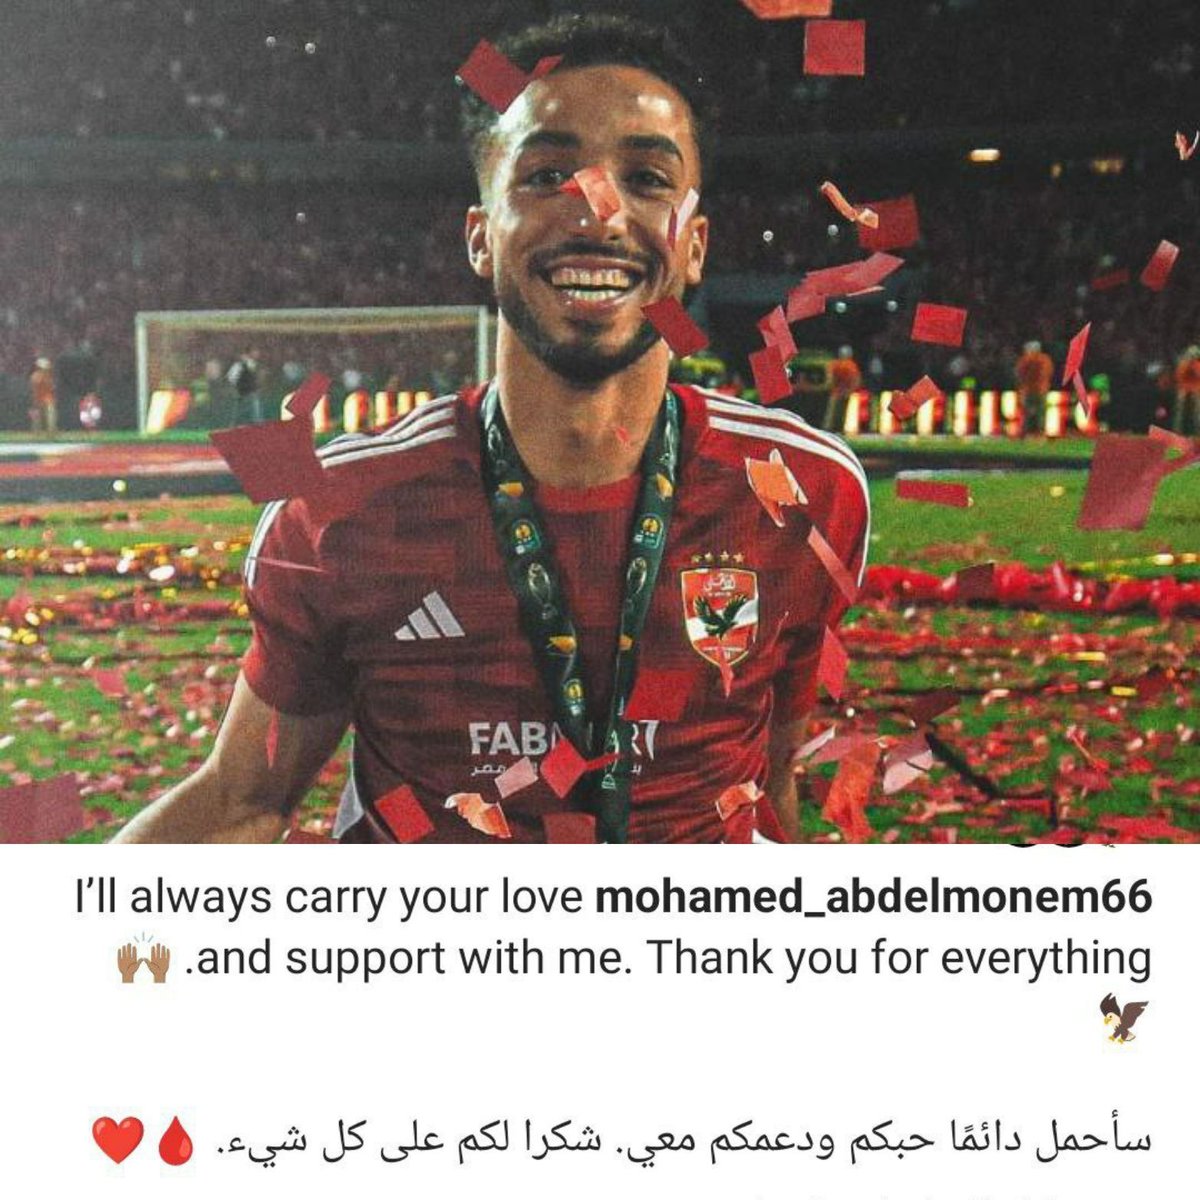 محمد عبد المنعم عبر انستجرام 

'سأحمل دائمًا حبكم ودعمكم معي. شكرا لكم على كل شيء❤️'.